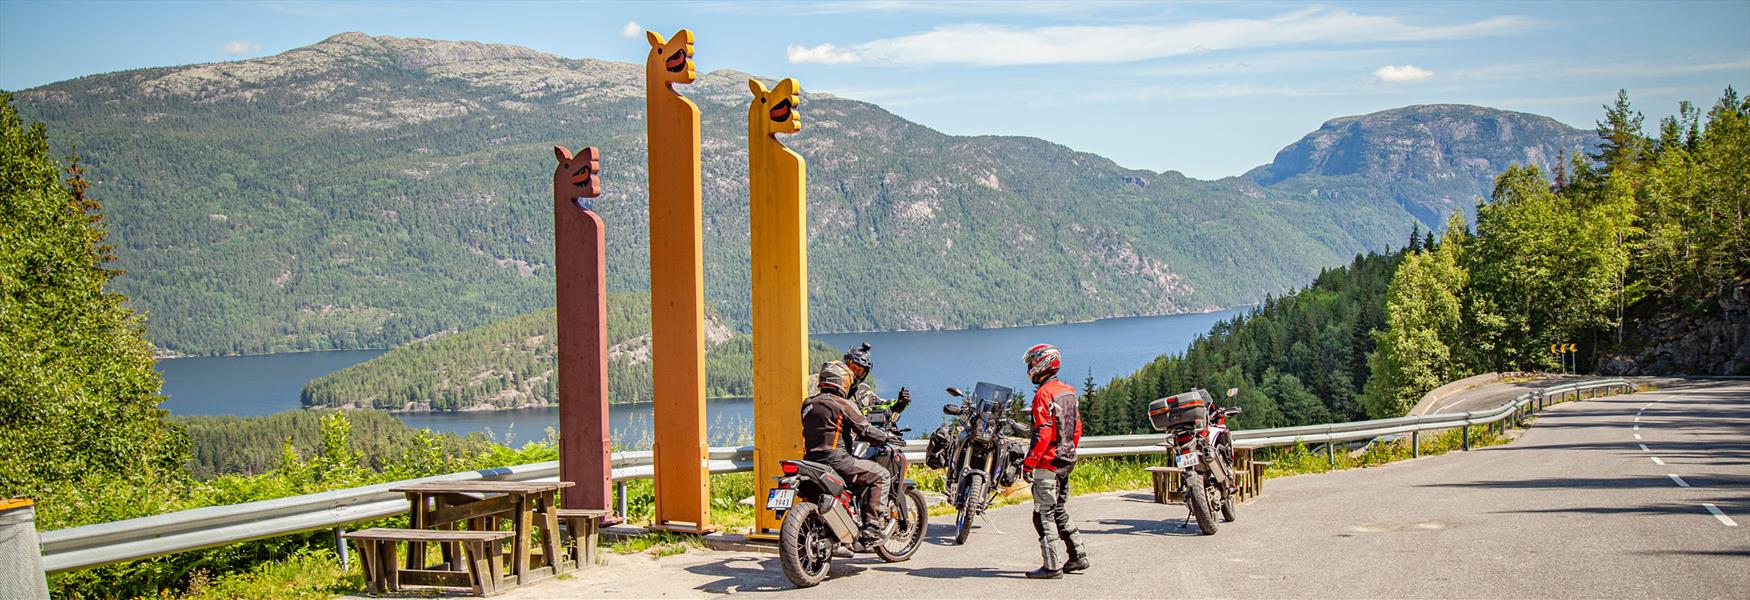 motorsyklister står på en parkeringsplass langs Telemarksvegen